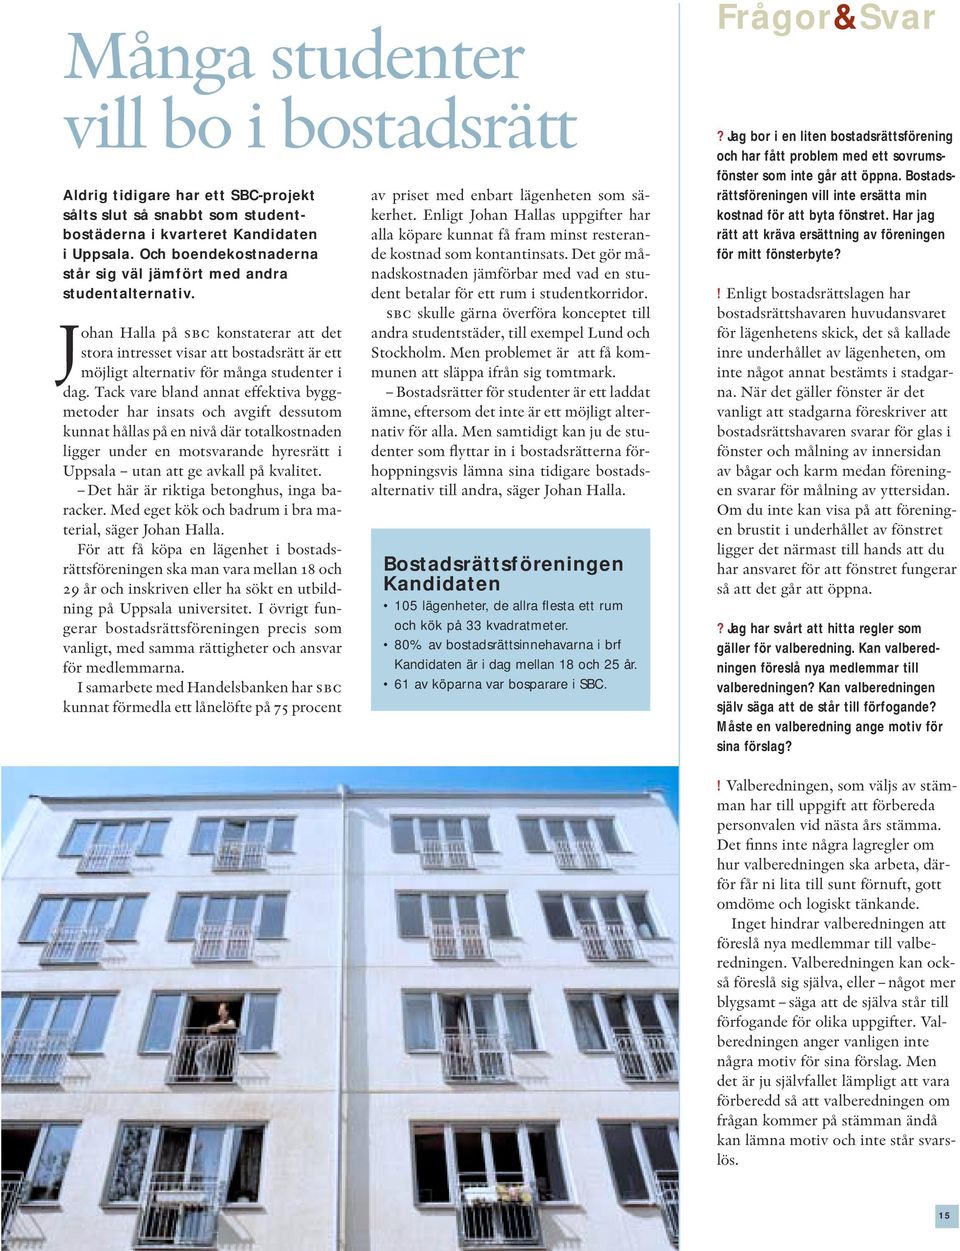 Johan Halla på sbc konstaterar att det stora intresset visar att bostadsrätt är ett möjligt alternativ för många studenter i dag.